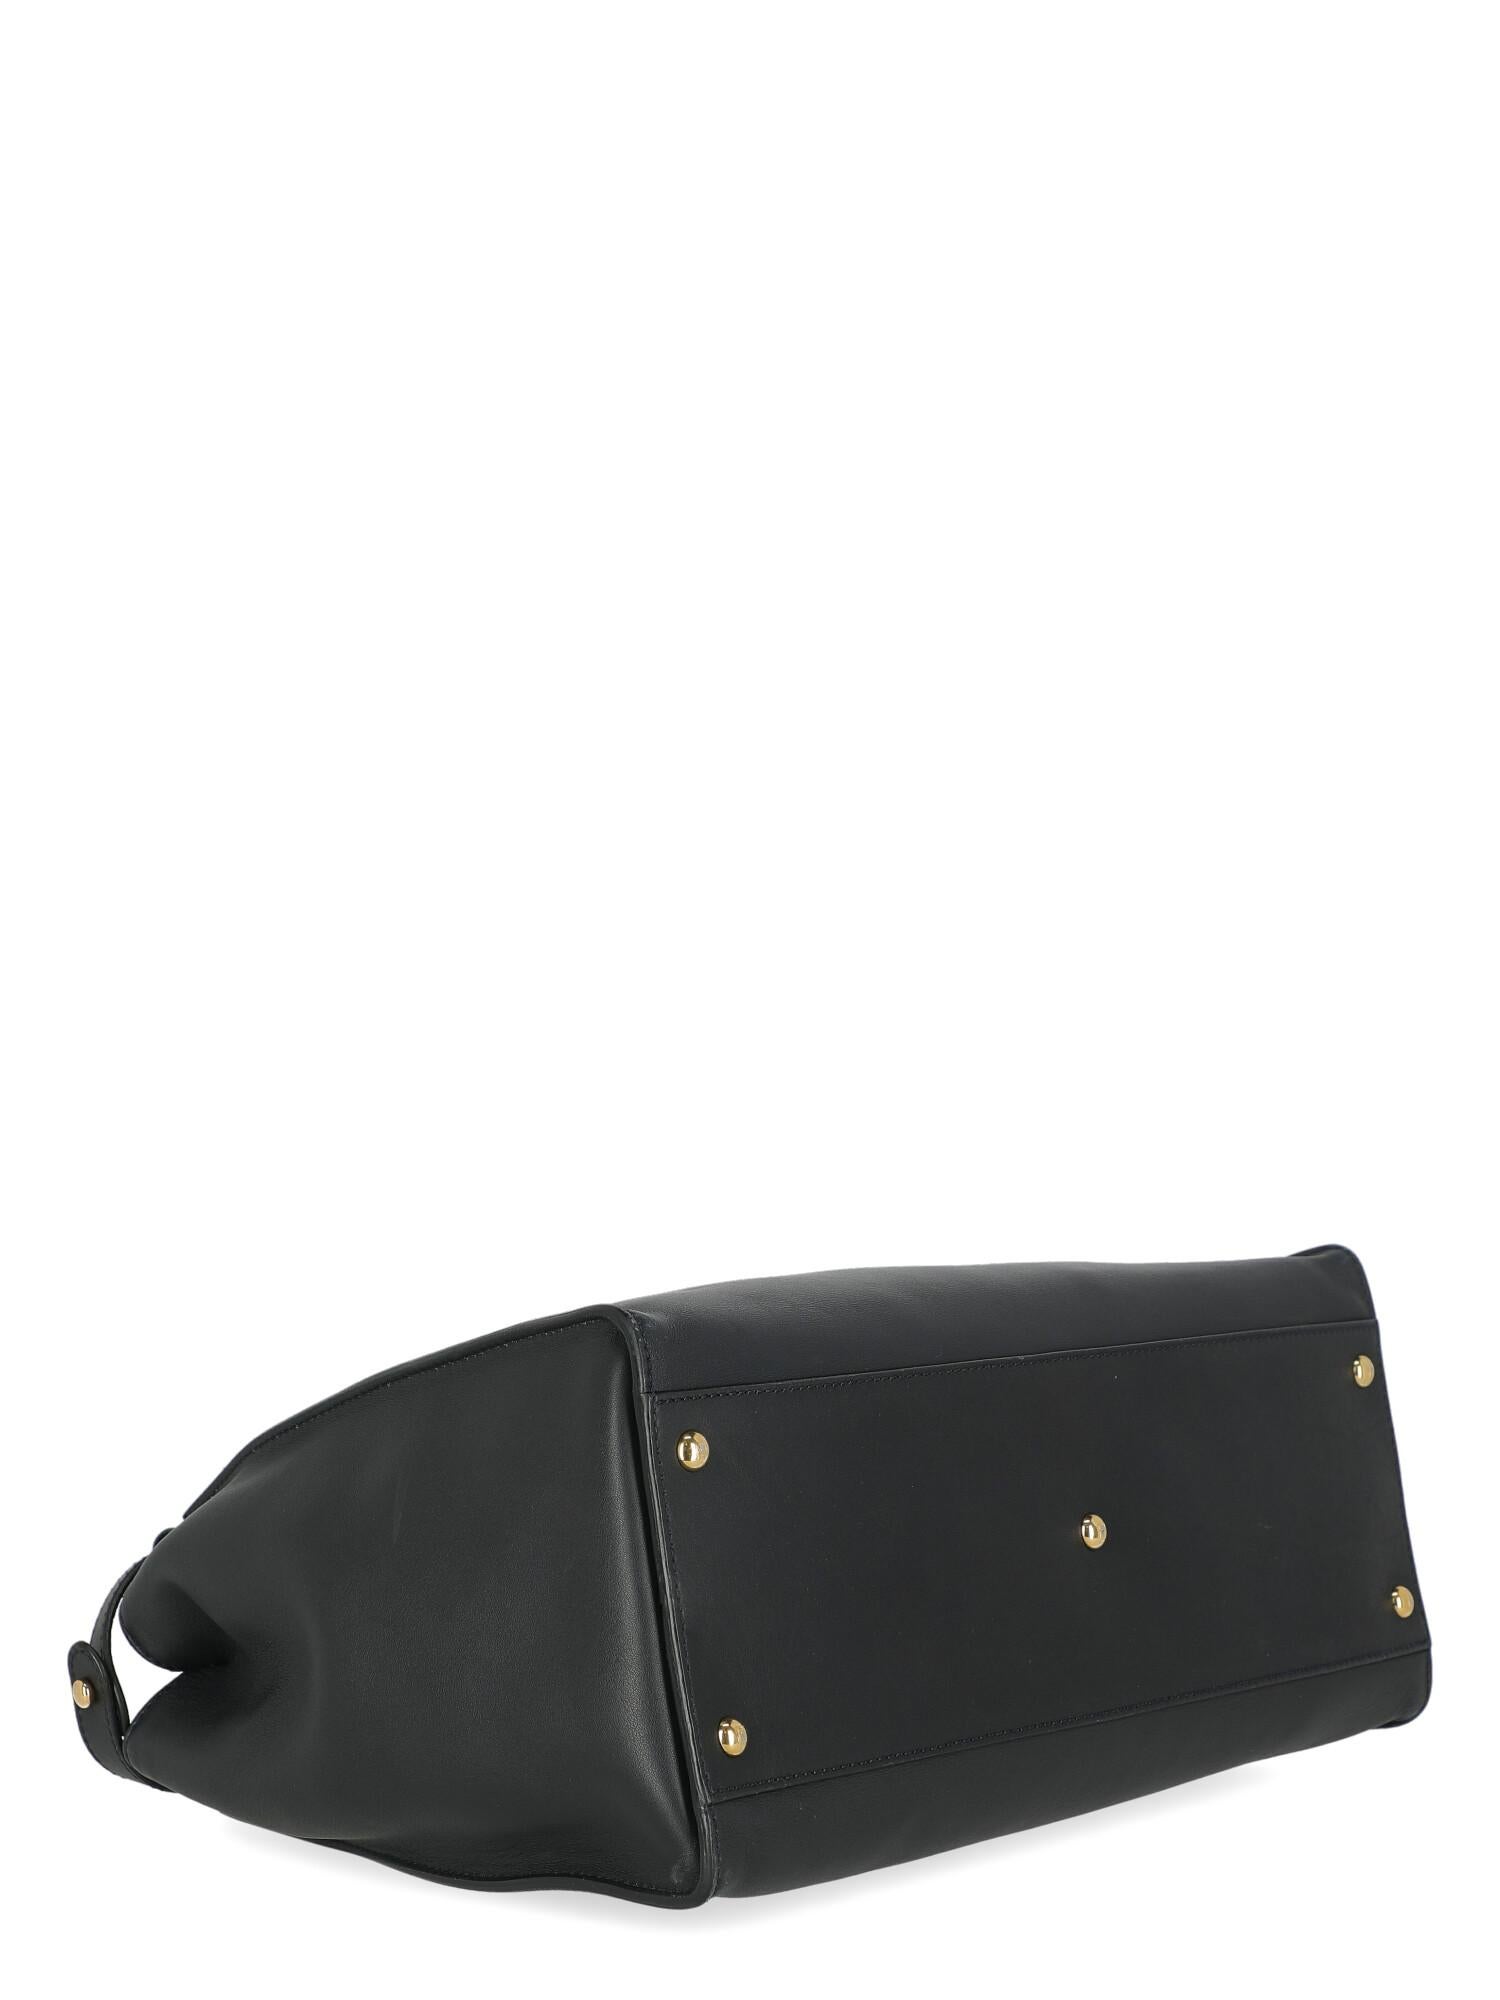 Women's Fendi Women Handbags Peekaboo Navy Leather 